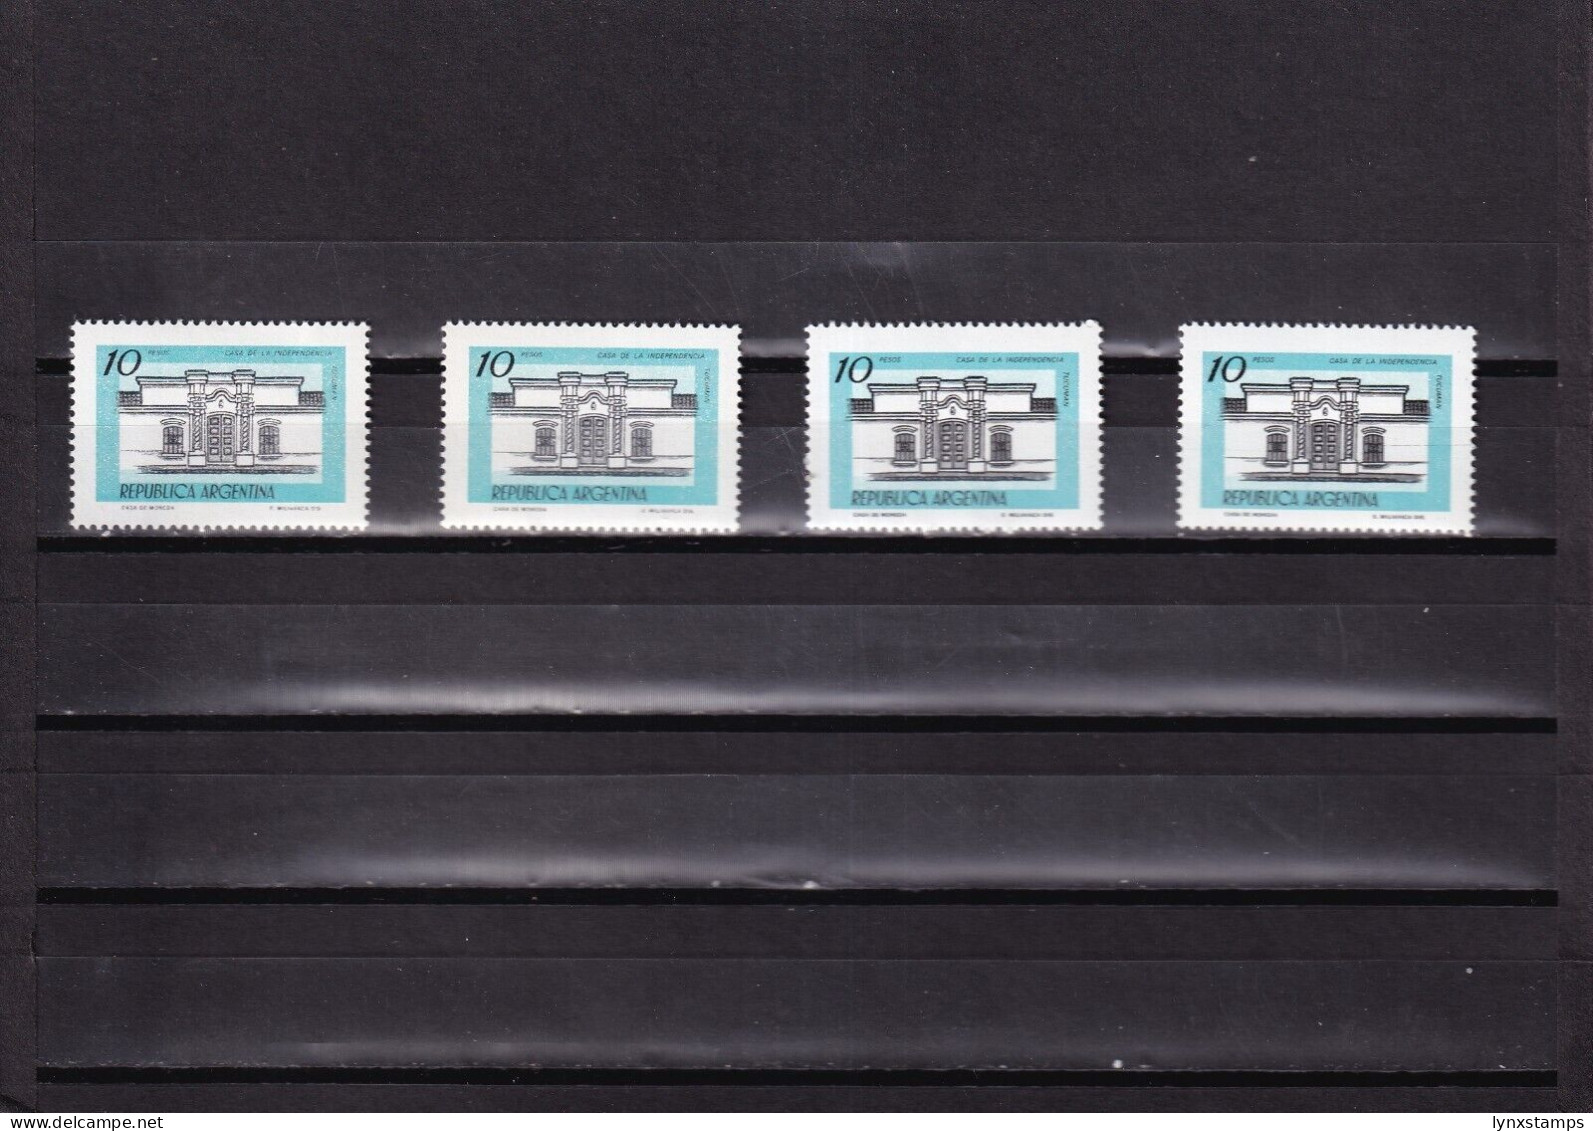 ER03 Argentina 1979 House Of Independence, Tucuman - MNH Stamps - Oblitérés